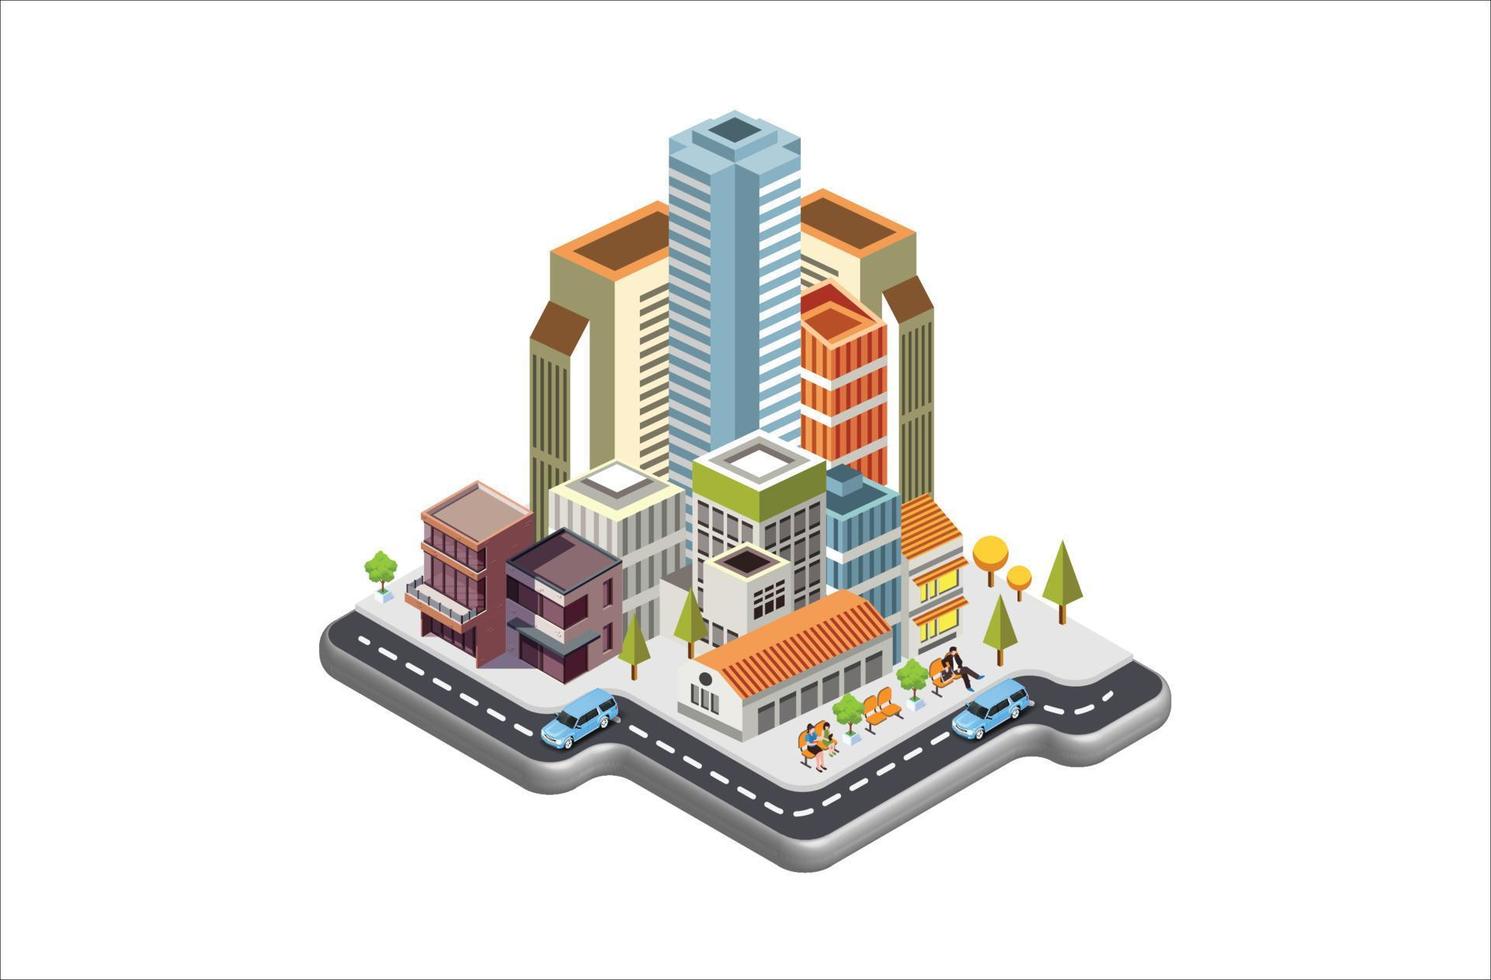 moderno isométrica vector ciudad con rascacielos, gente, calles y vehículos, comercial y negocio zona infografía con iconos, adecuado para diagramas, infografía, y otro gráfico relacionado bienes